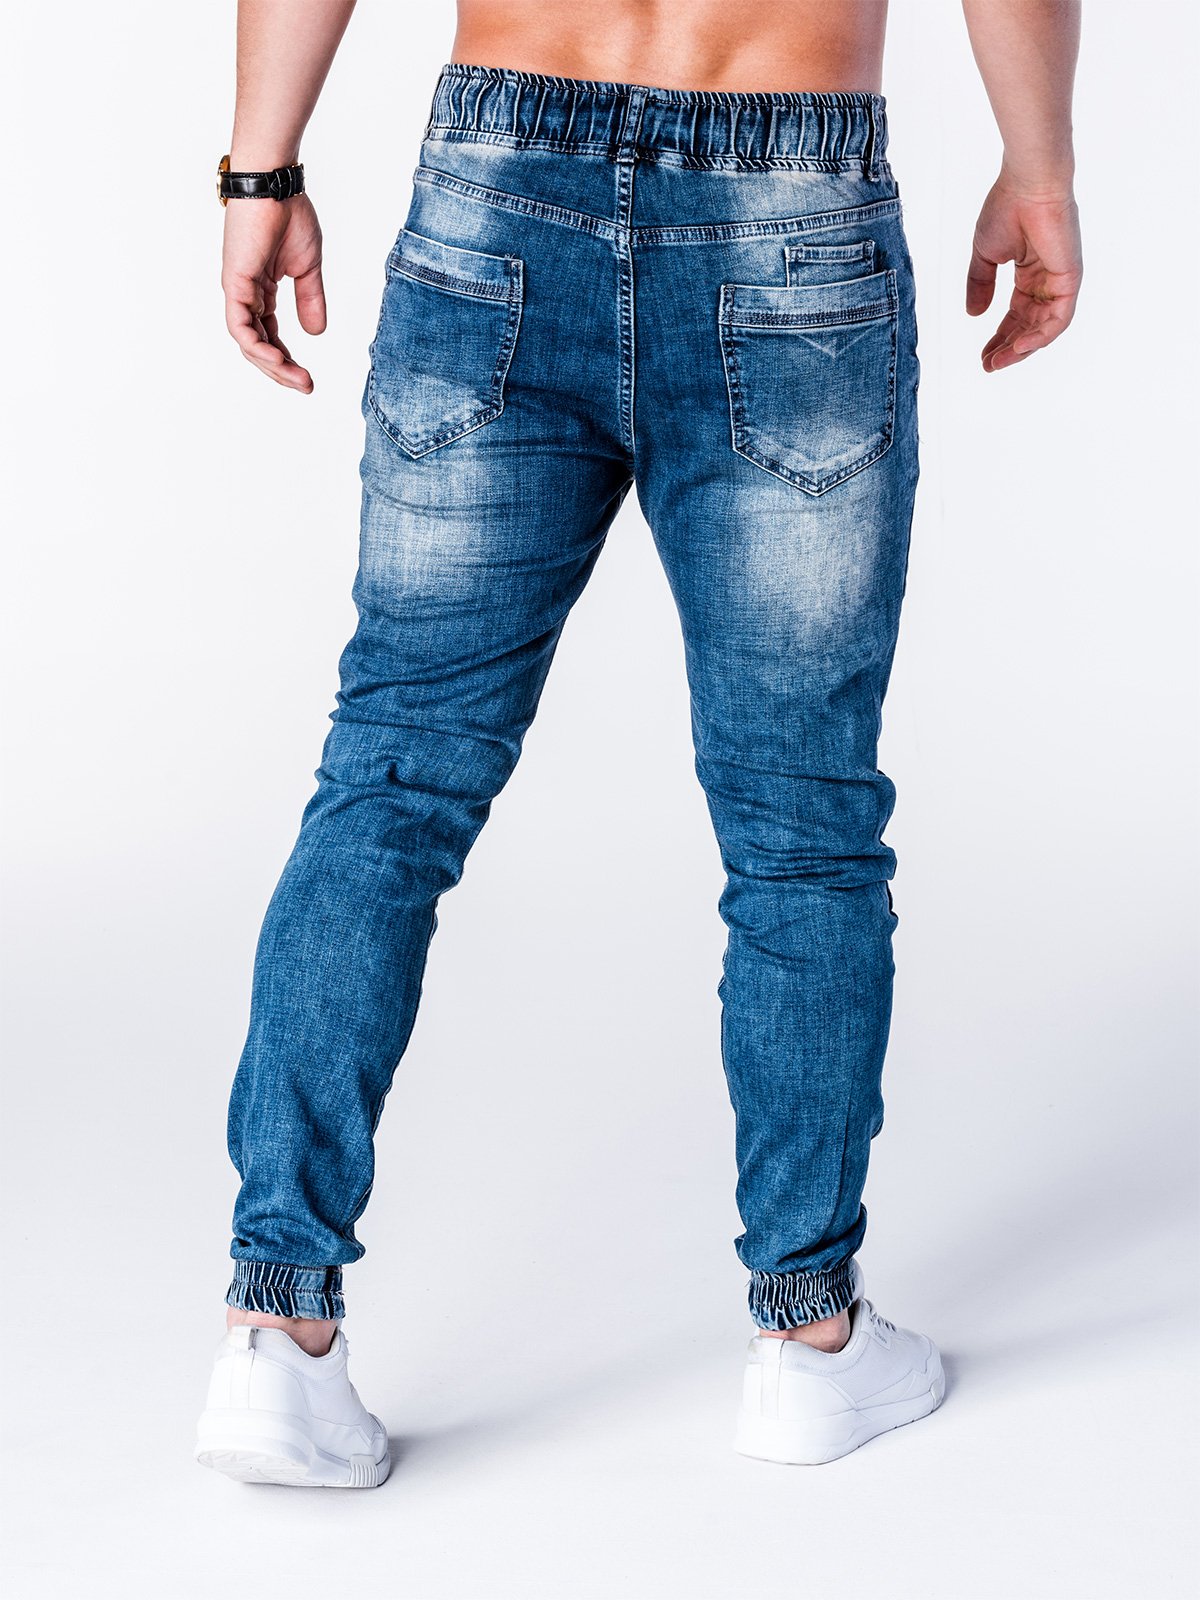  Men s  denim  jogger  pants  P663 blue MODONE wholesale 